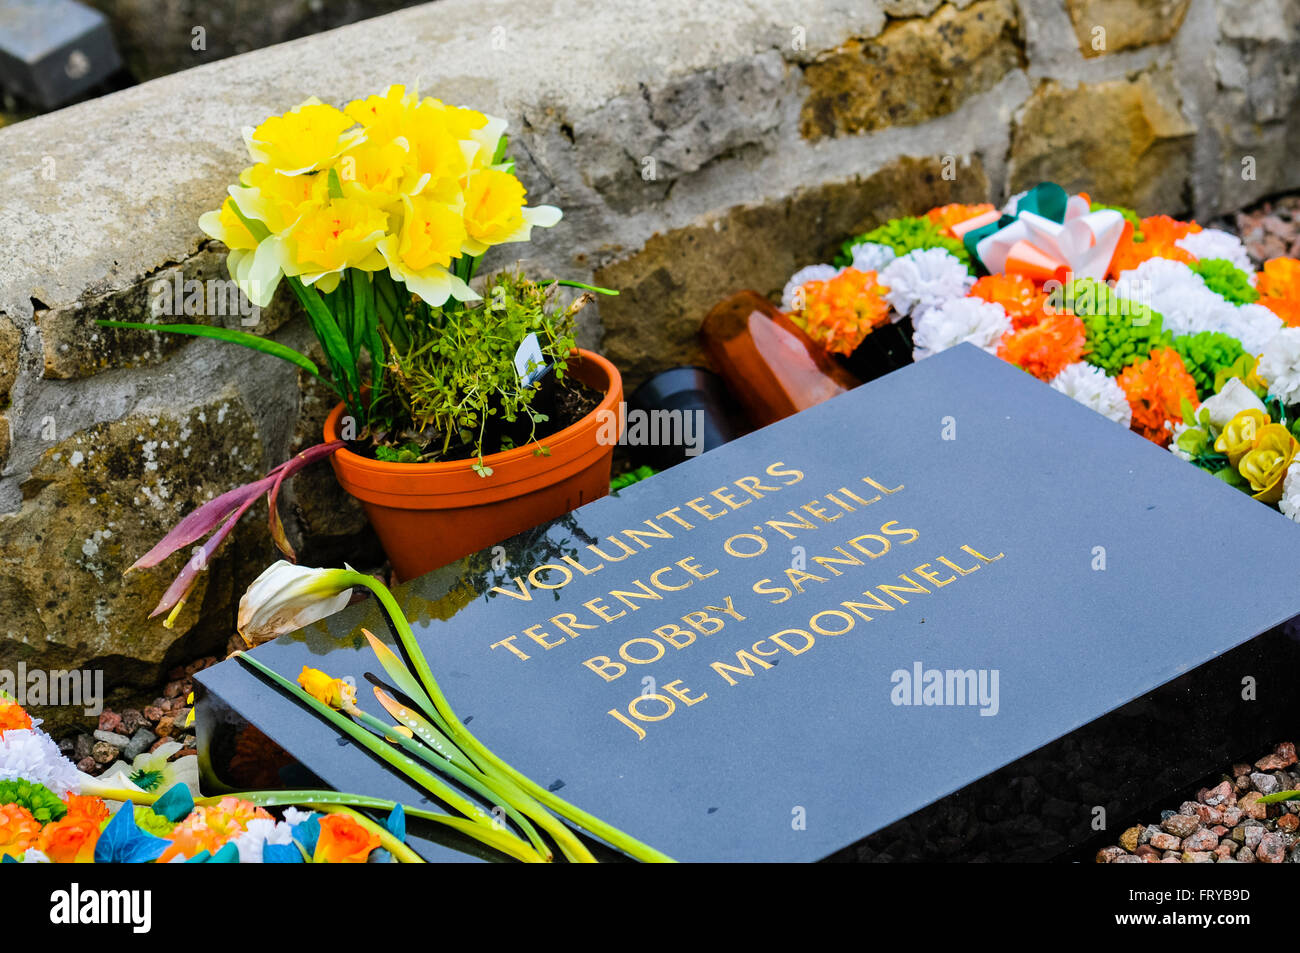 Belfast, Irlande du Nord. 24 Mar 2015 - Des Fleurs sur la tombe de Bobby Sands, Terence O'Neil et Joe McDonnell, cimetière Milltown dans l'Ouest de Belfast avant le 100e anniversaire de l'Insurrection de Pâques en Irlande. Crédit : Stephen Barnes/Alamy Live News Banque D'Images